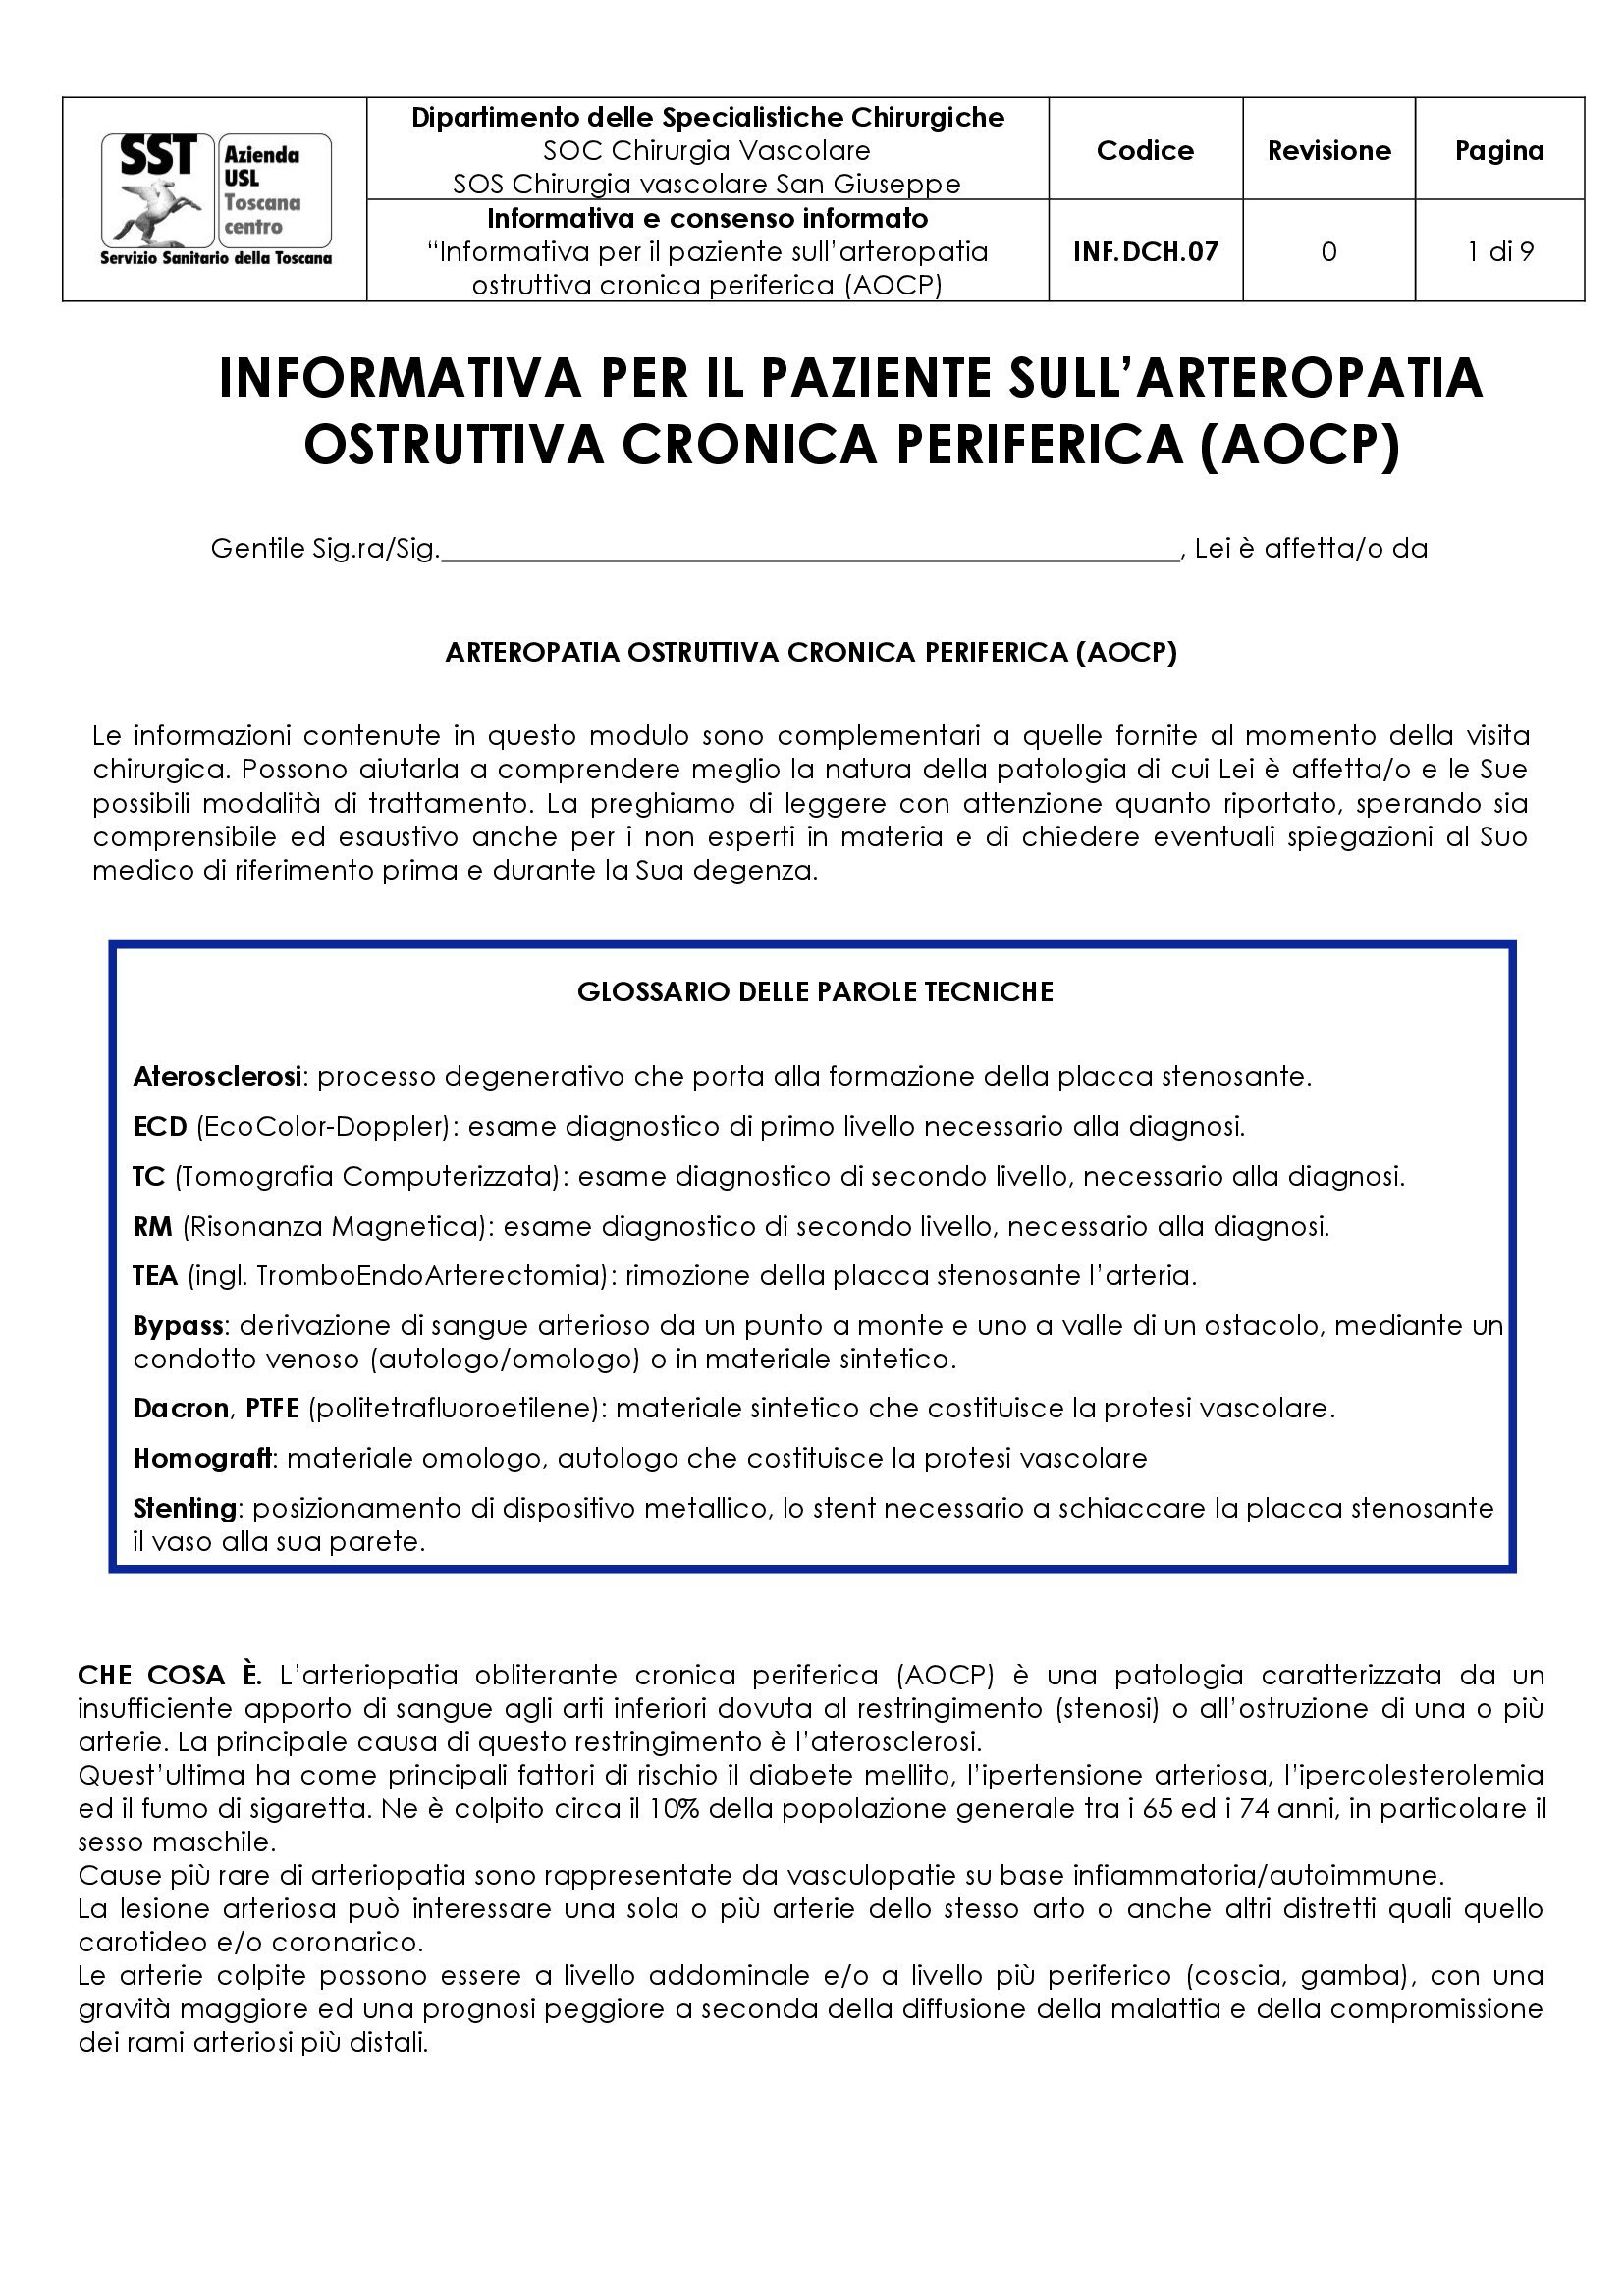 INF.DCH.07 “Informativa per il paziente sull’arteropatia ostruttiva cronica periferica (AOCP)"